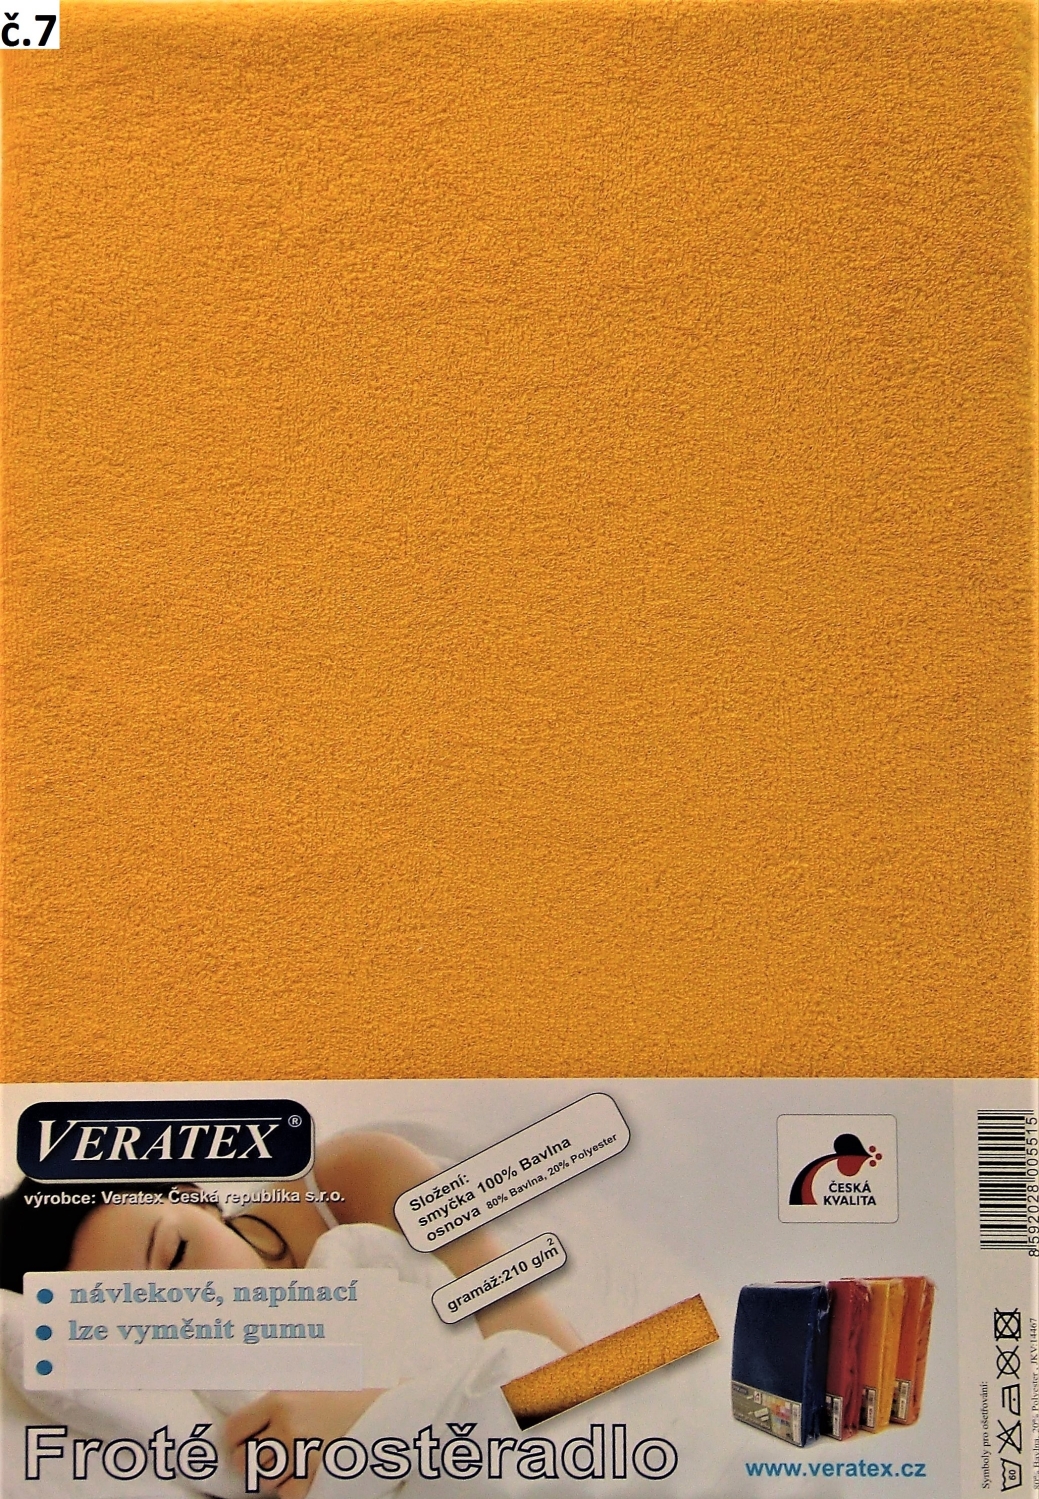 Veratex Froté prostěradlo 200x200/16 cm (č. 7-sytě žlutá)